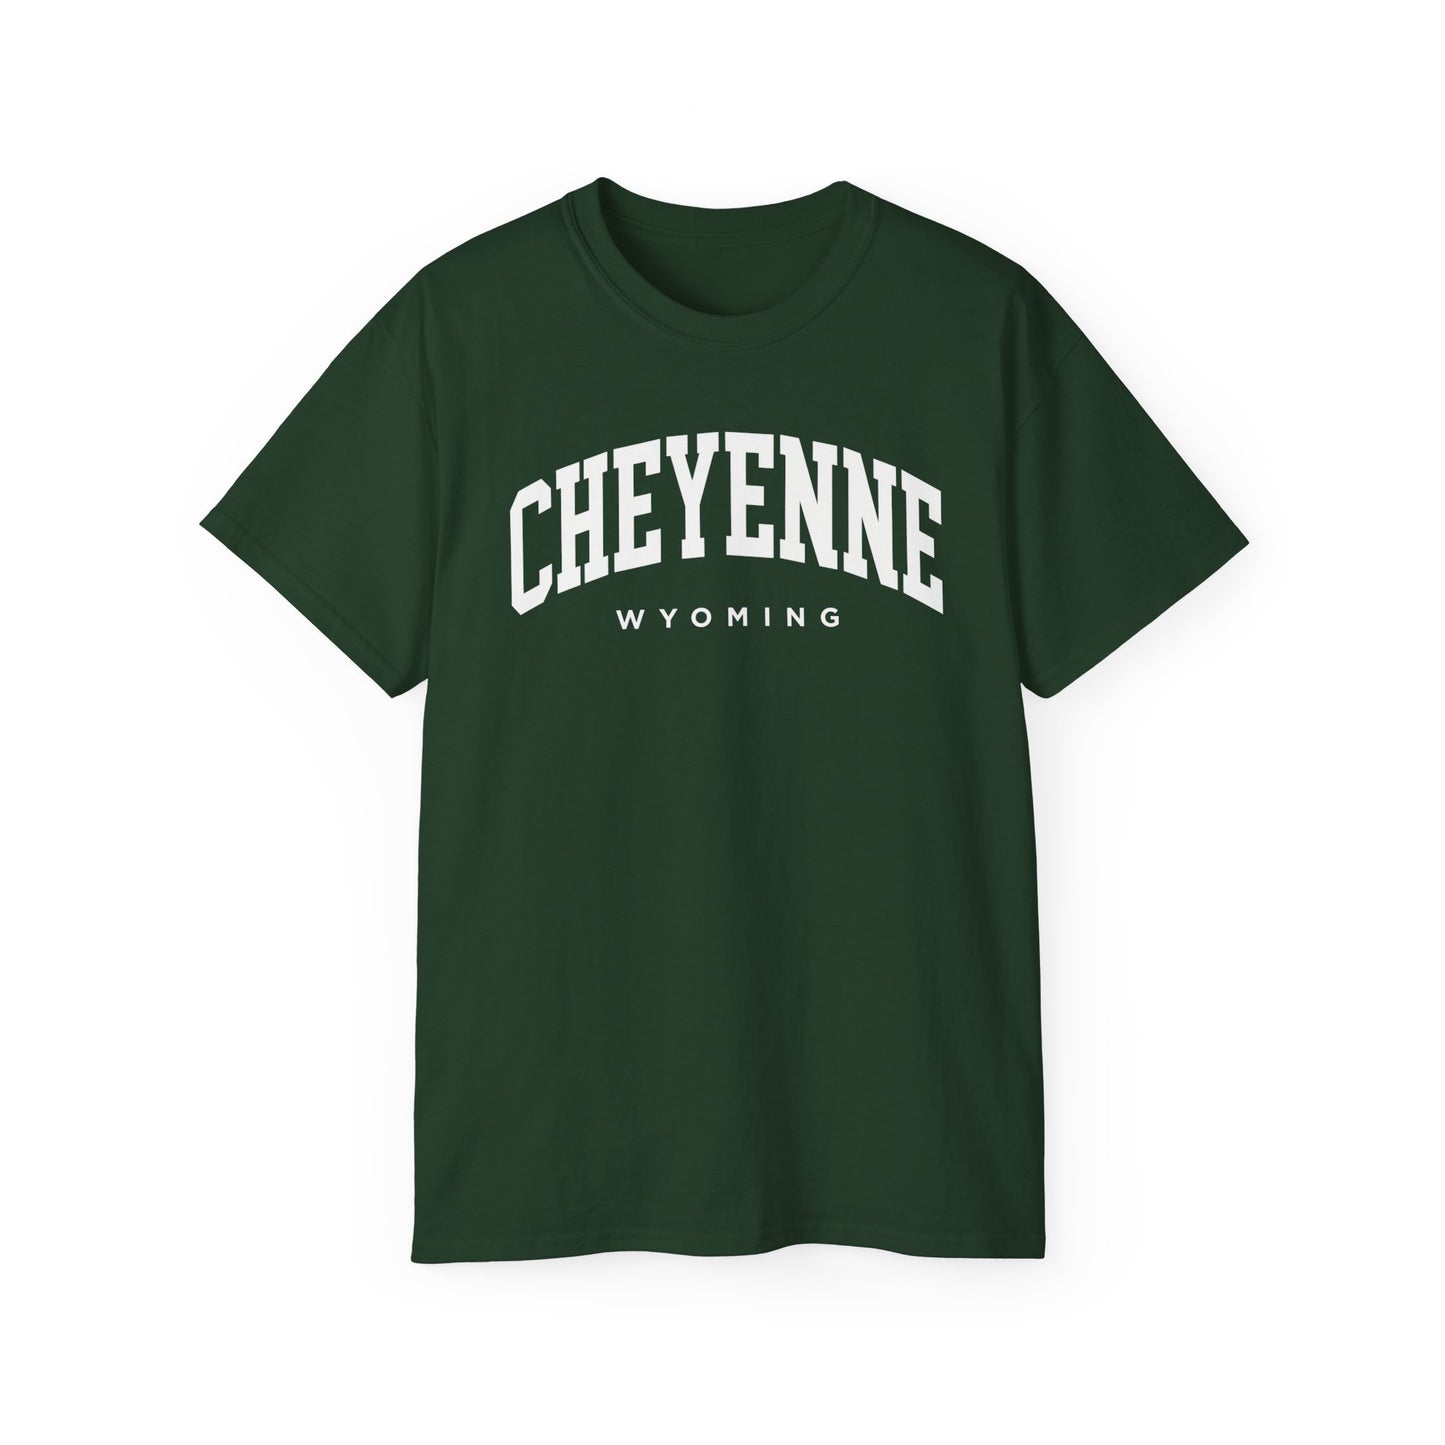 Cheyenne Wyoming Tee